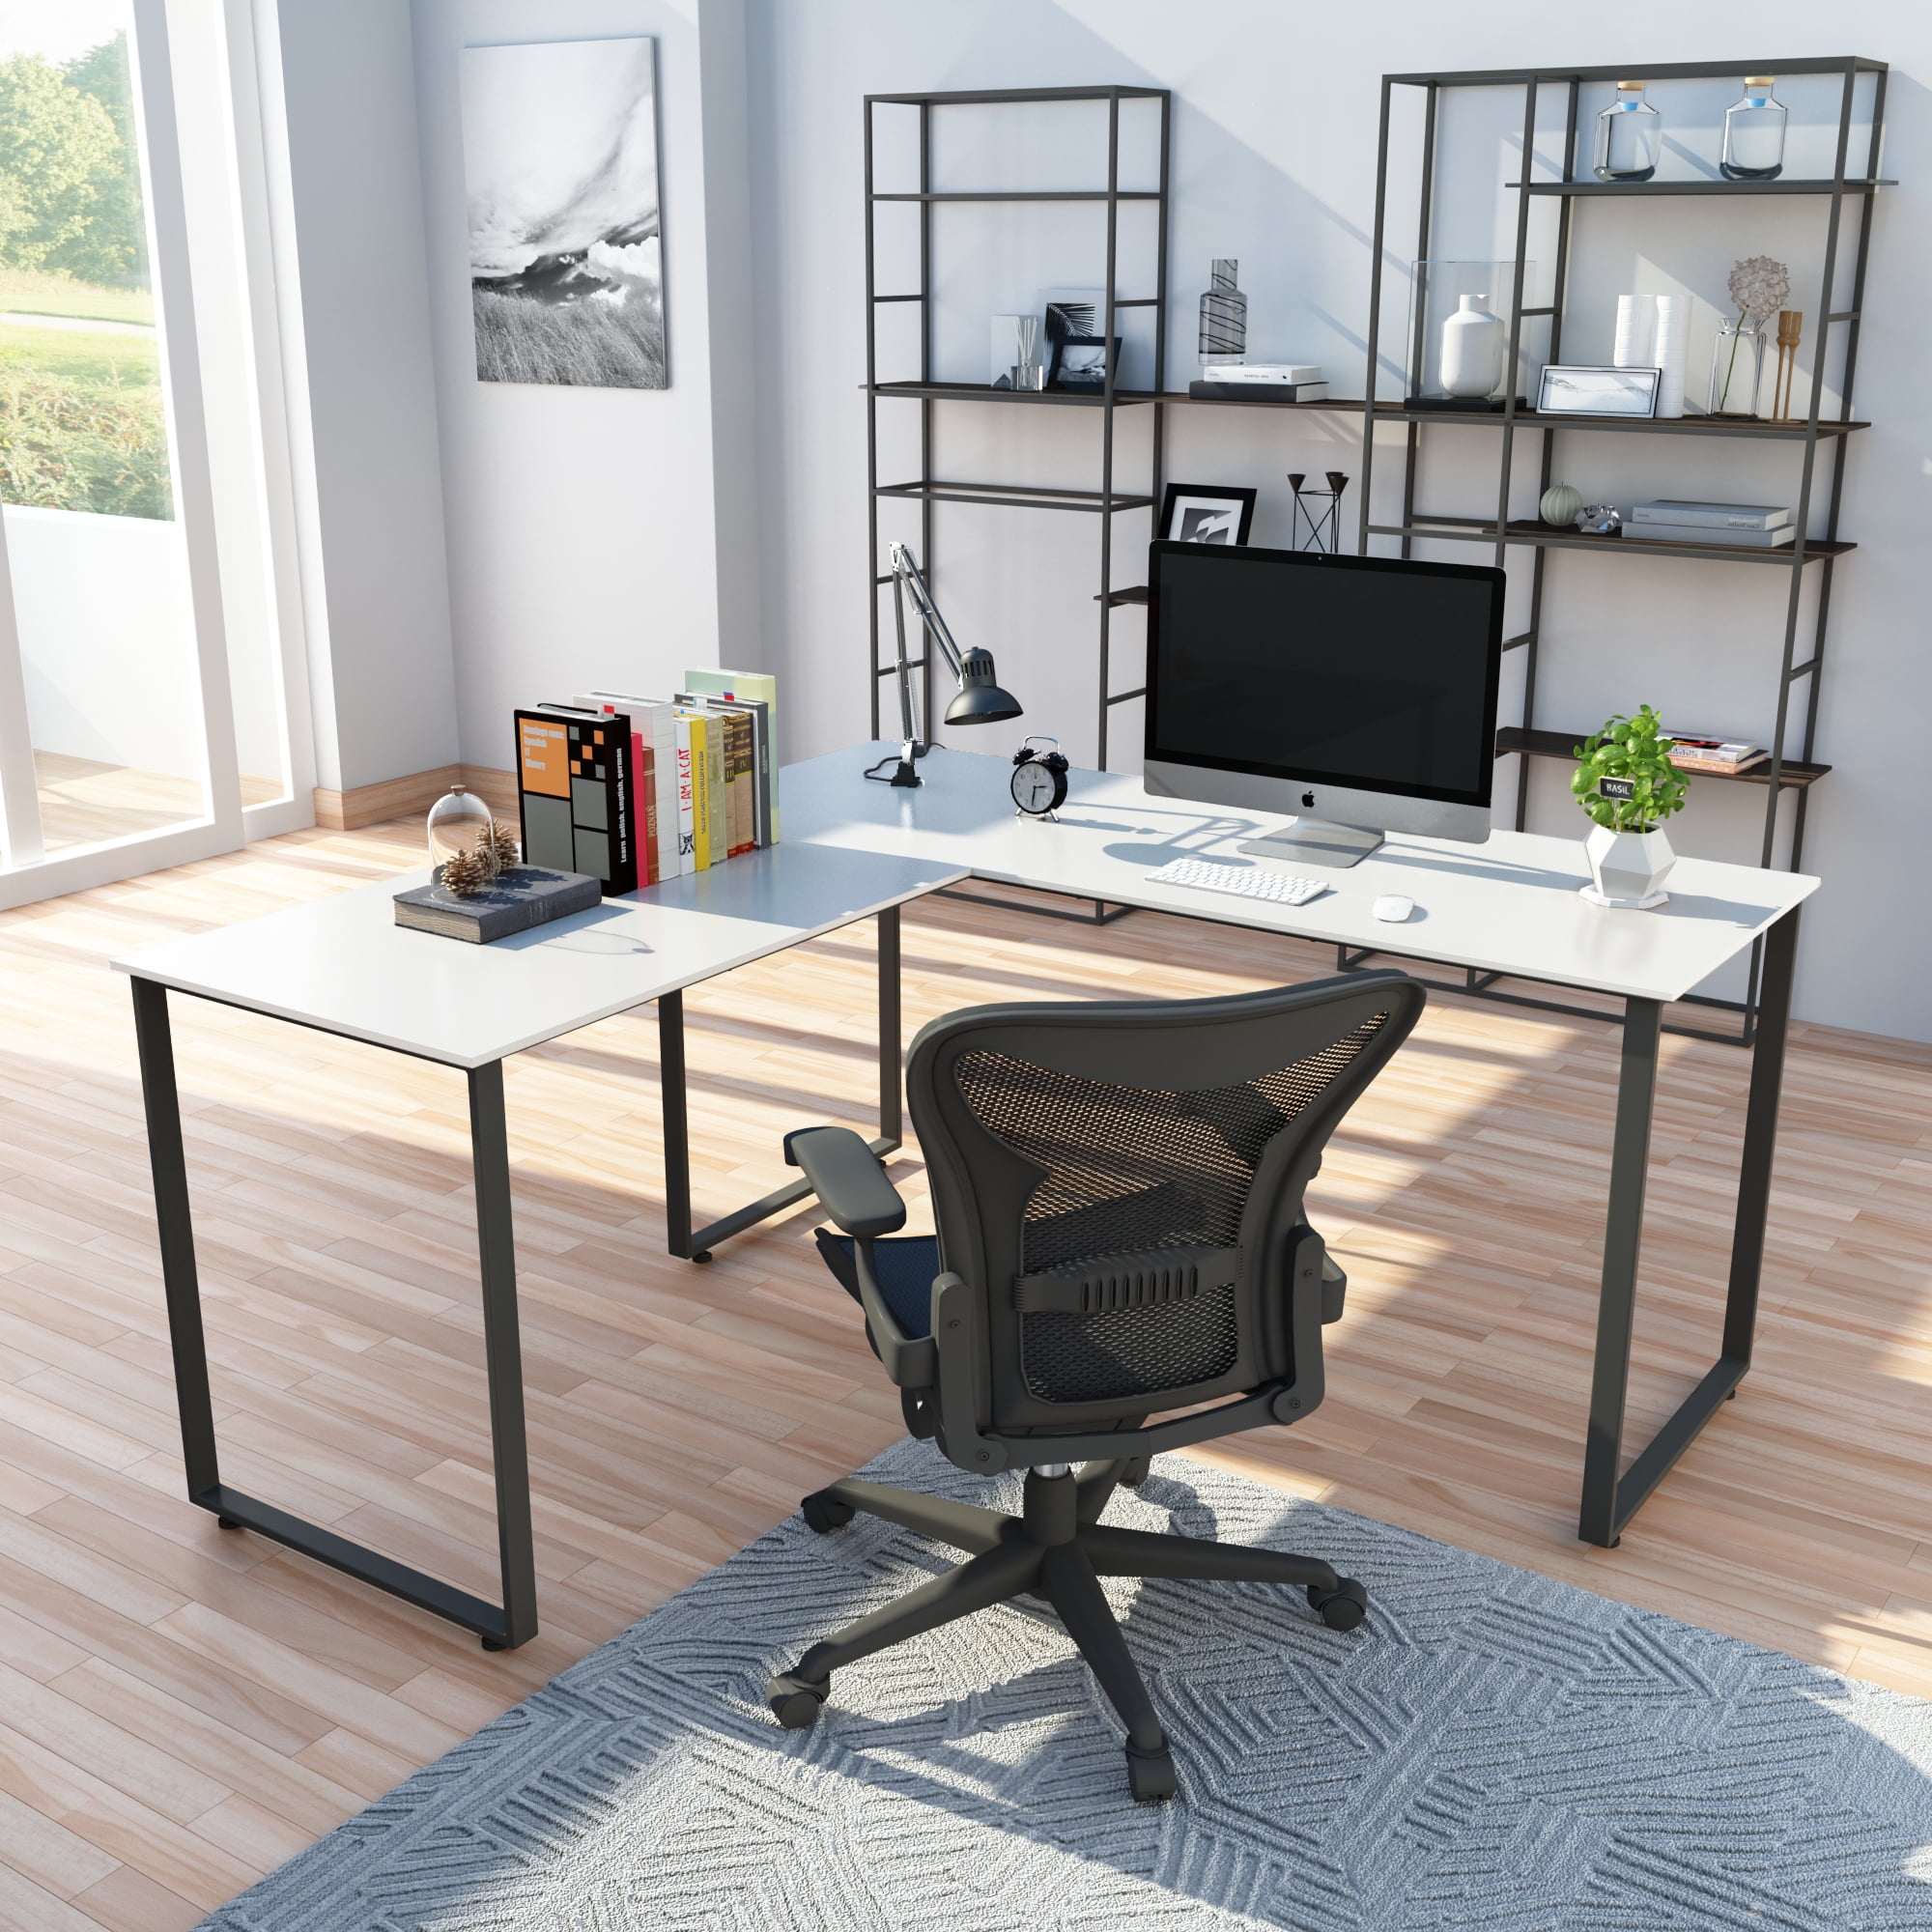 Details about   Computer Table Modern Desk Home Office Study Workstation L-shape Life Desk Work 